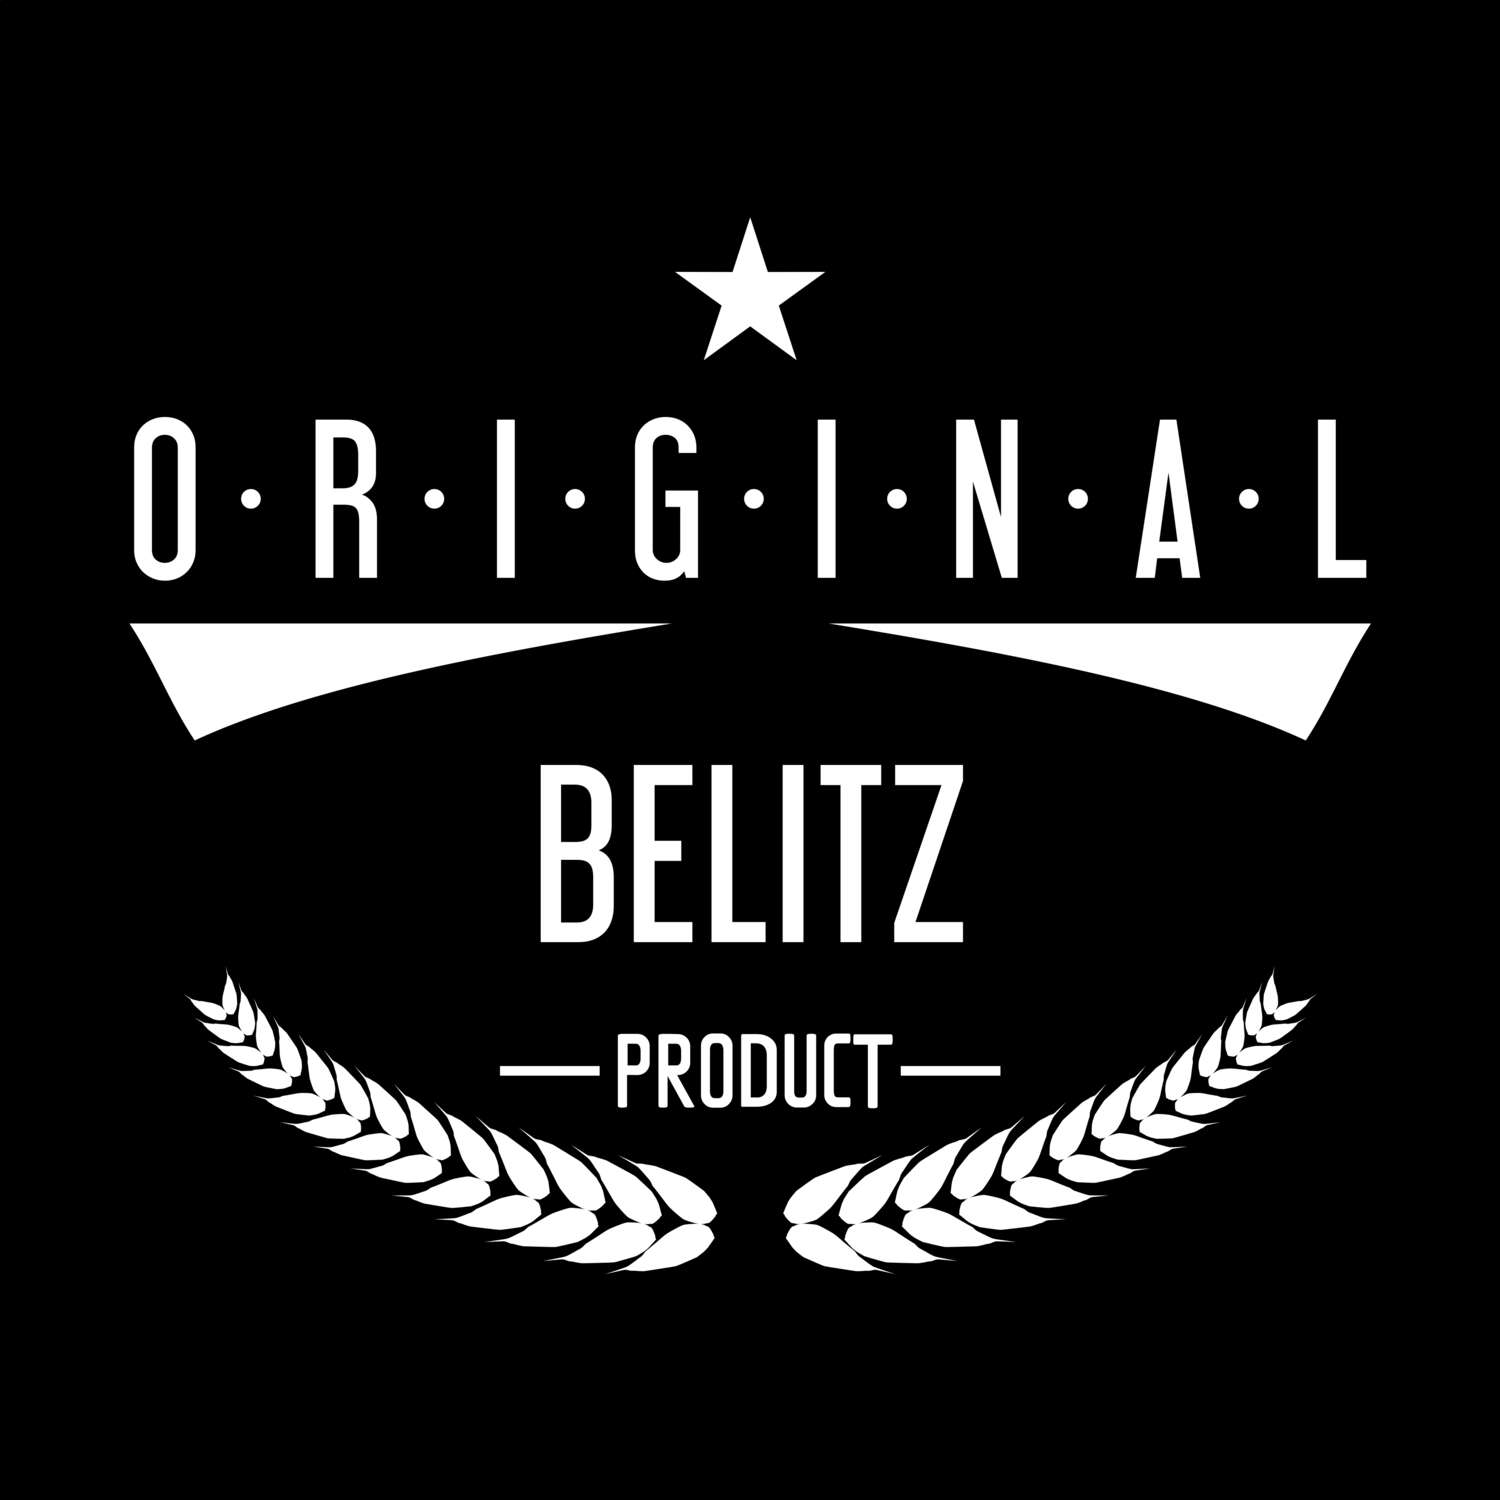 Belitz T-Shirt »Original Product«